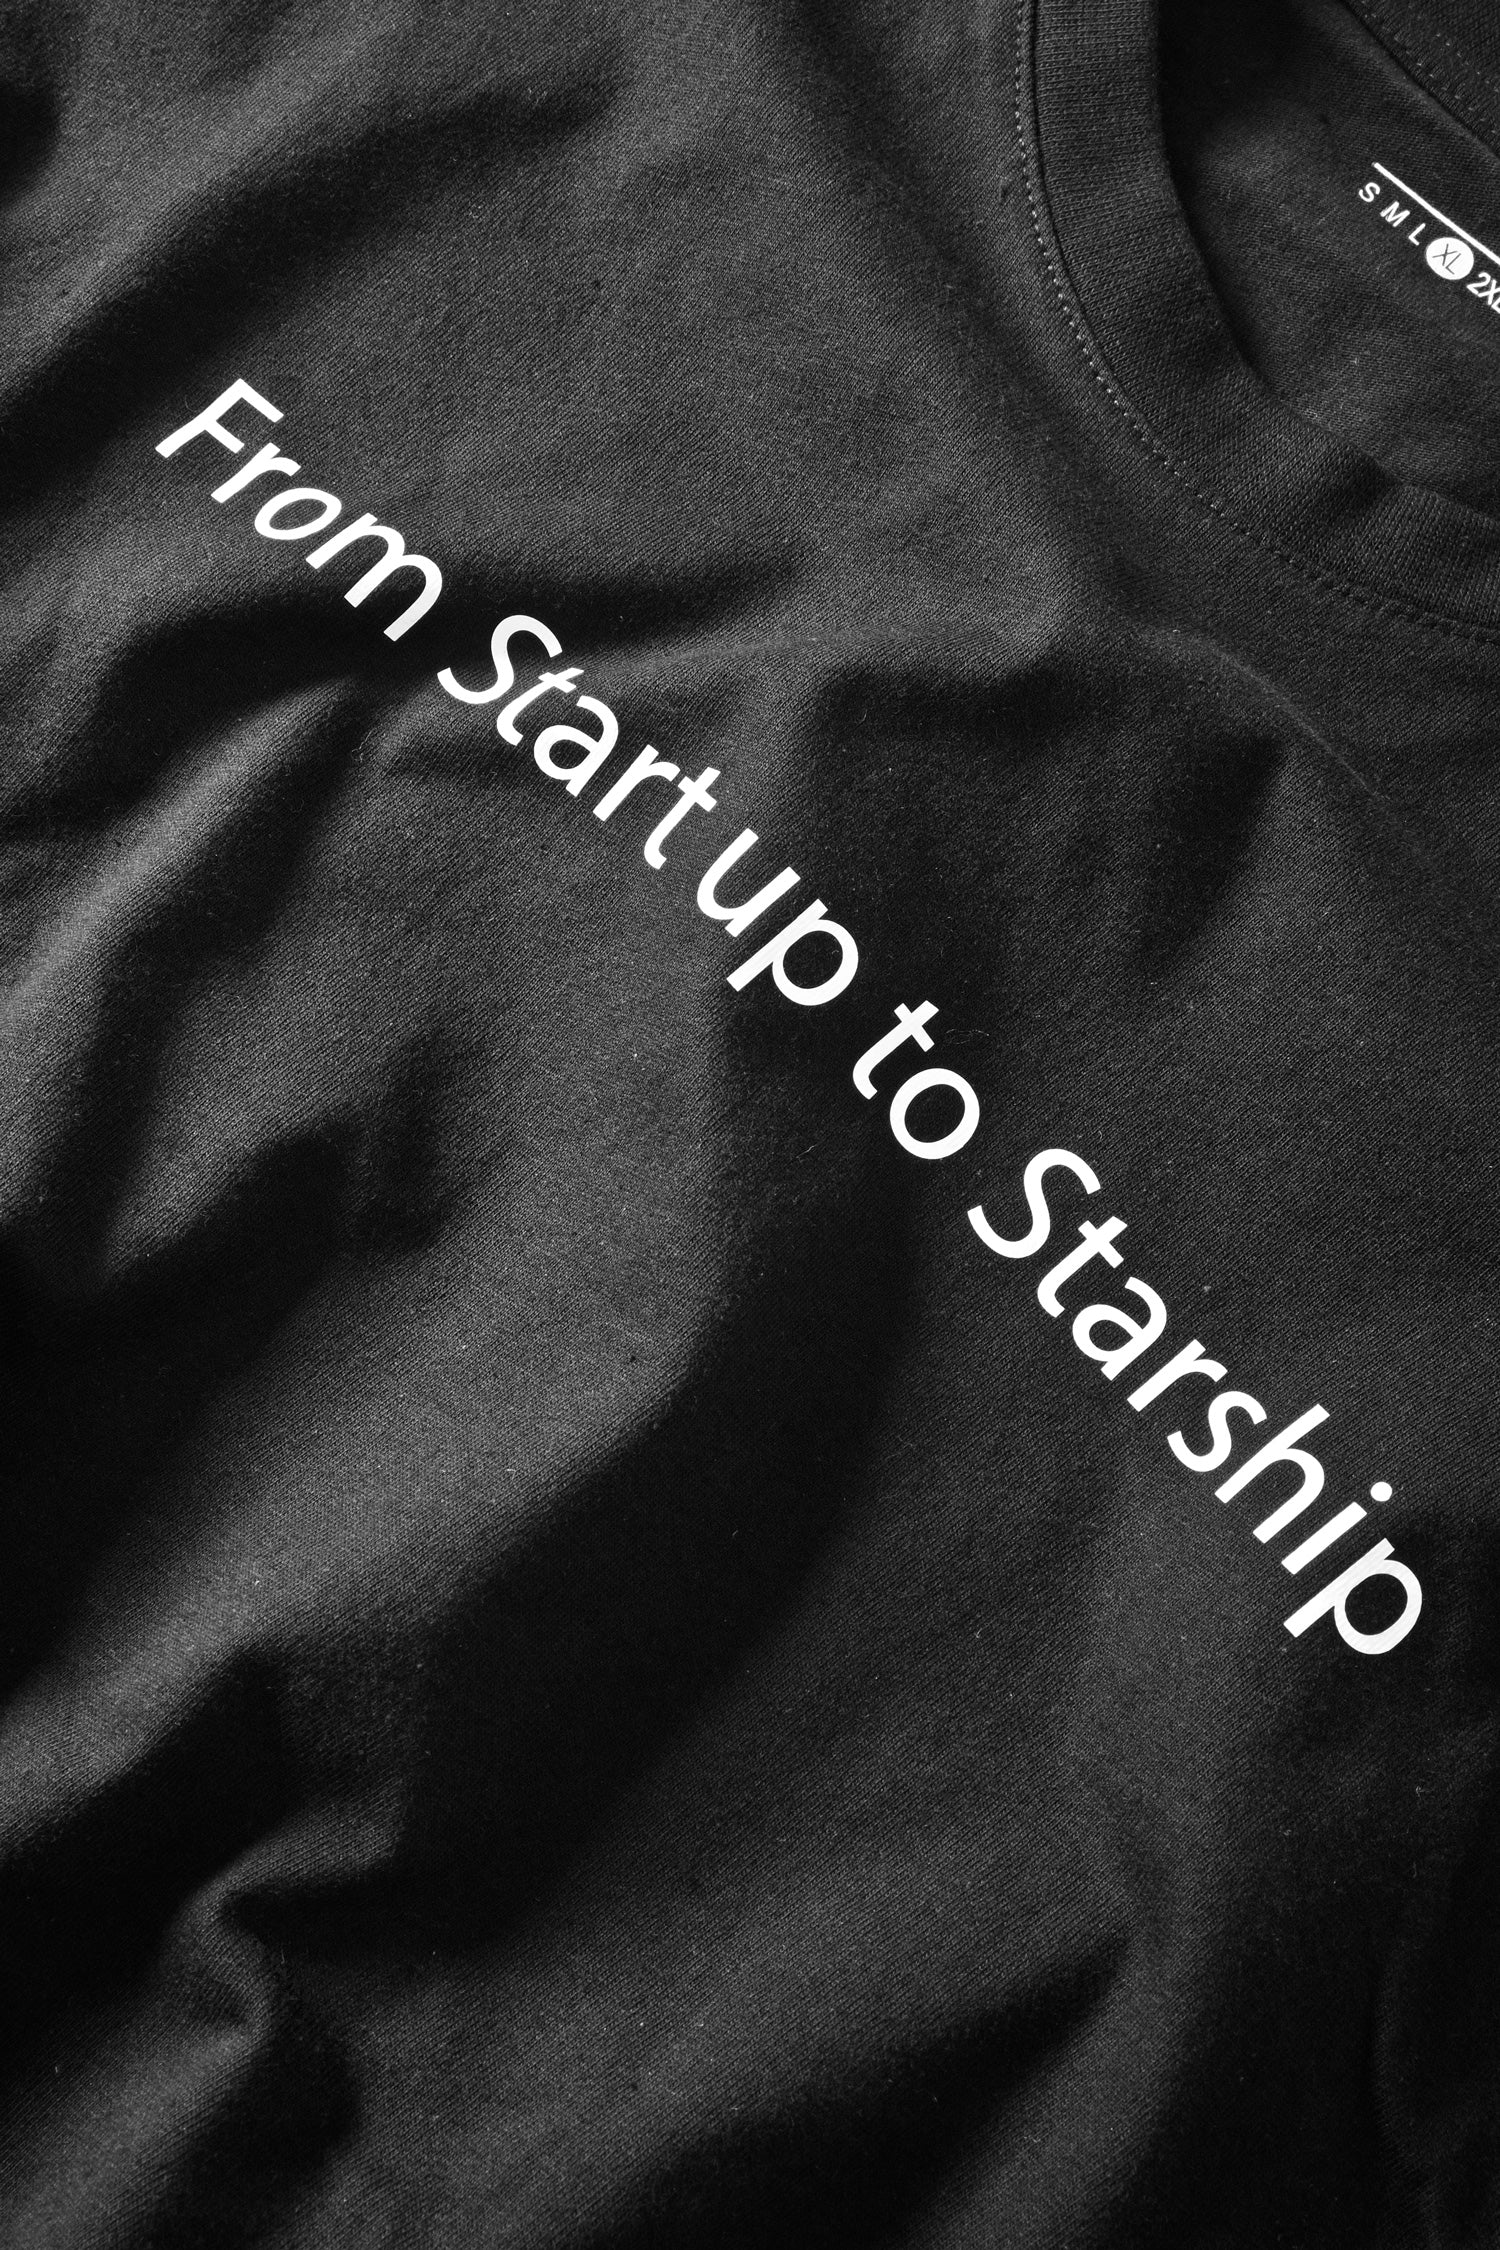 Men's Start Up To Starship Printed Crew Neck Tee Shirt